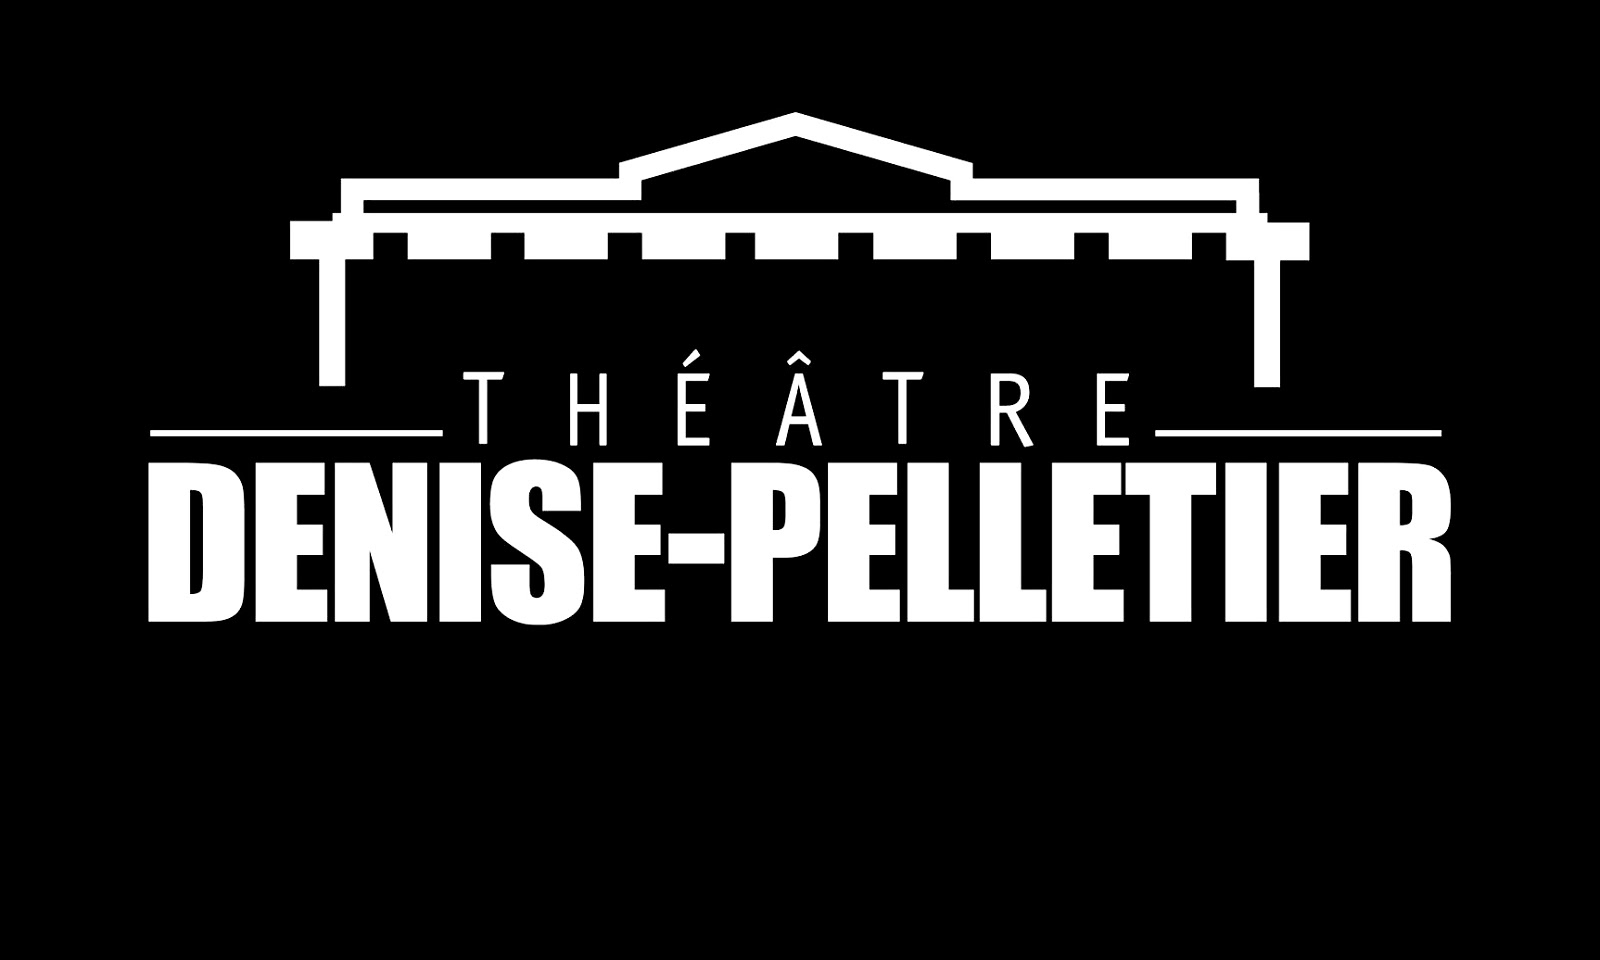 Théâtre Denise-Pelletier